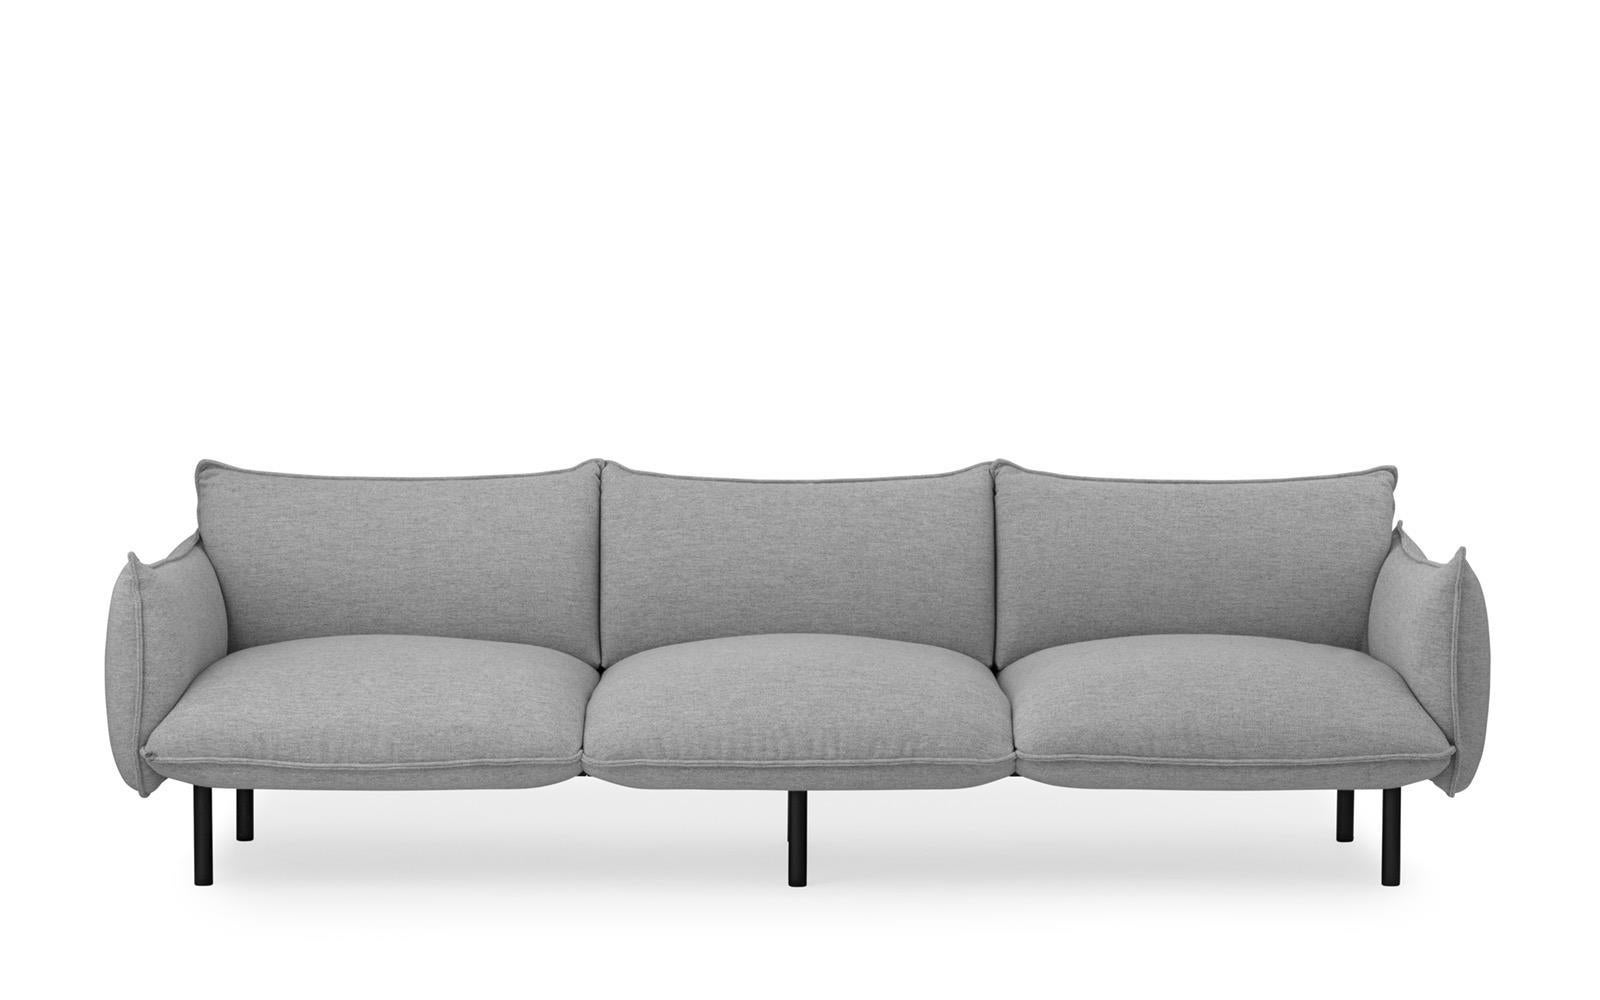 Contemporary Customizable Normann Copenhagen Ark Modular Sofa by Simon Legald For Sale